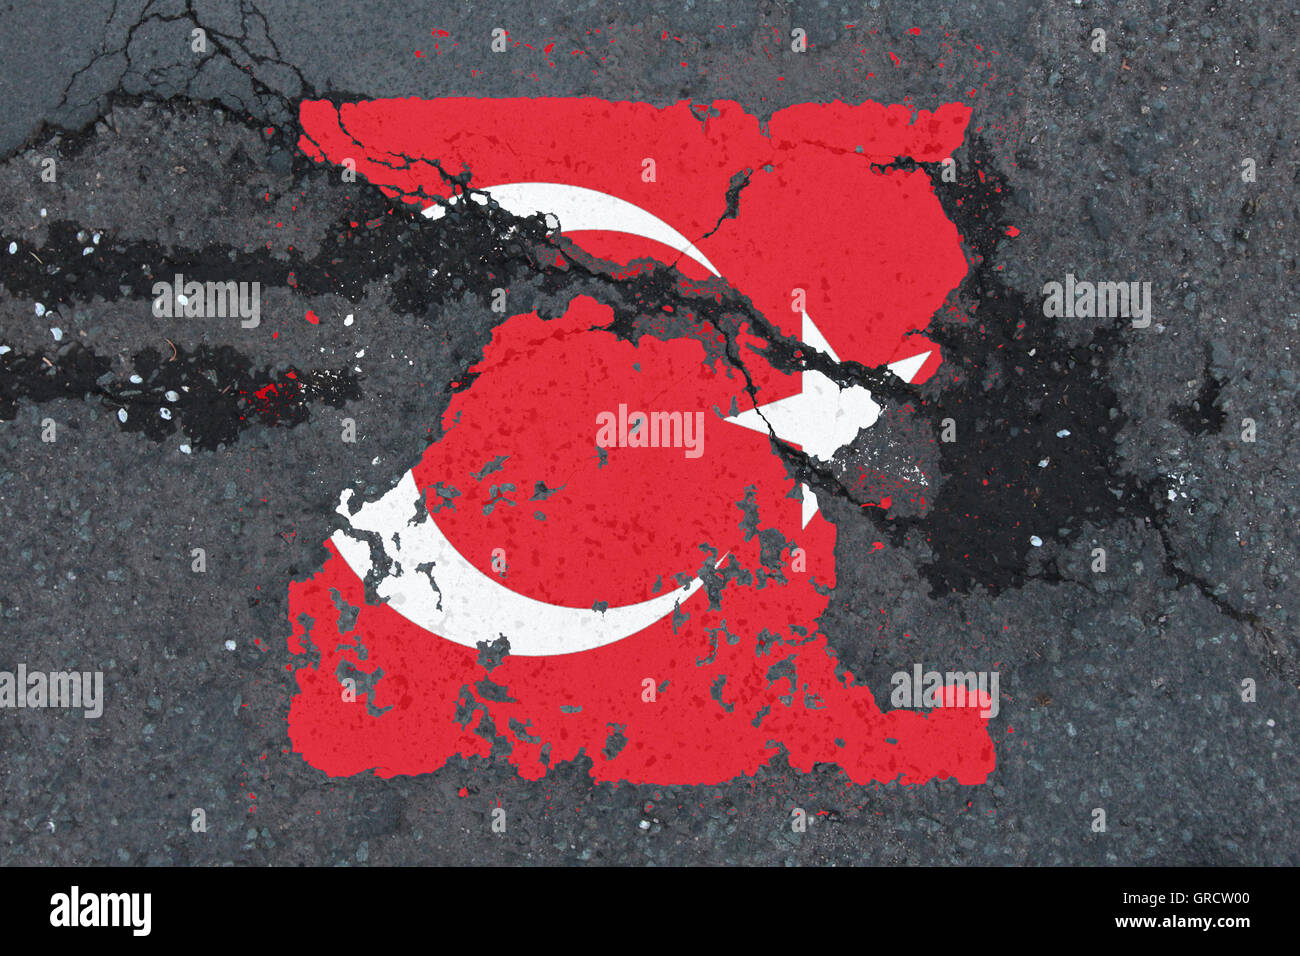 La Turchia mette in pericolo Processo di integrazione europea mediante taglio verso il basso i diritti democratici Foto Stock